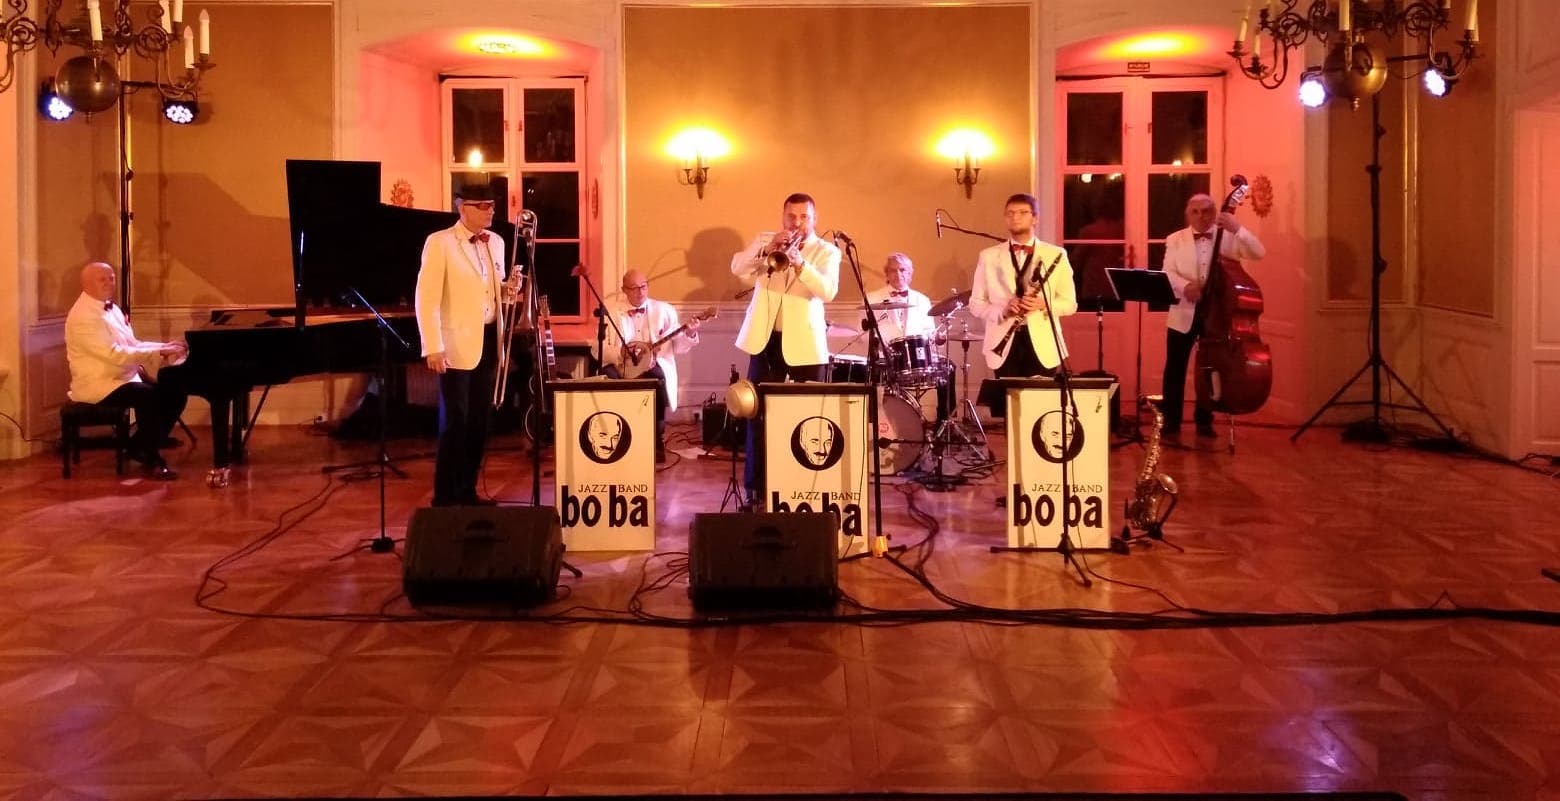 Boba Jazz Band